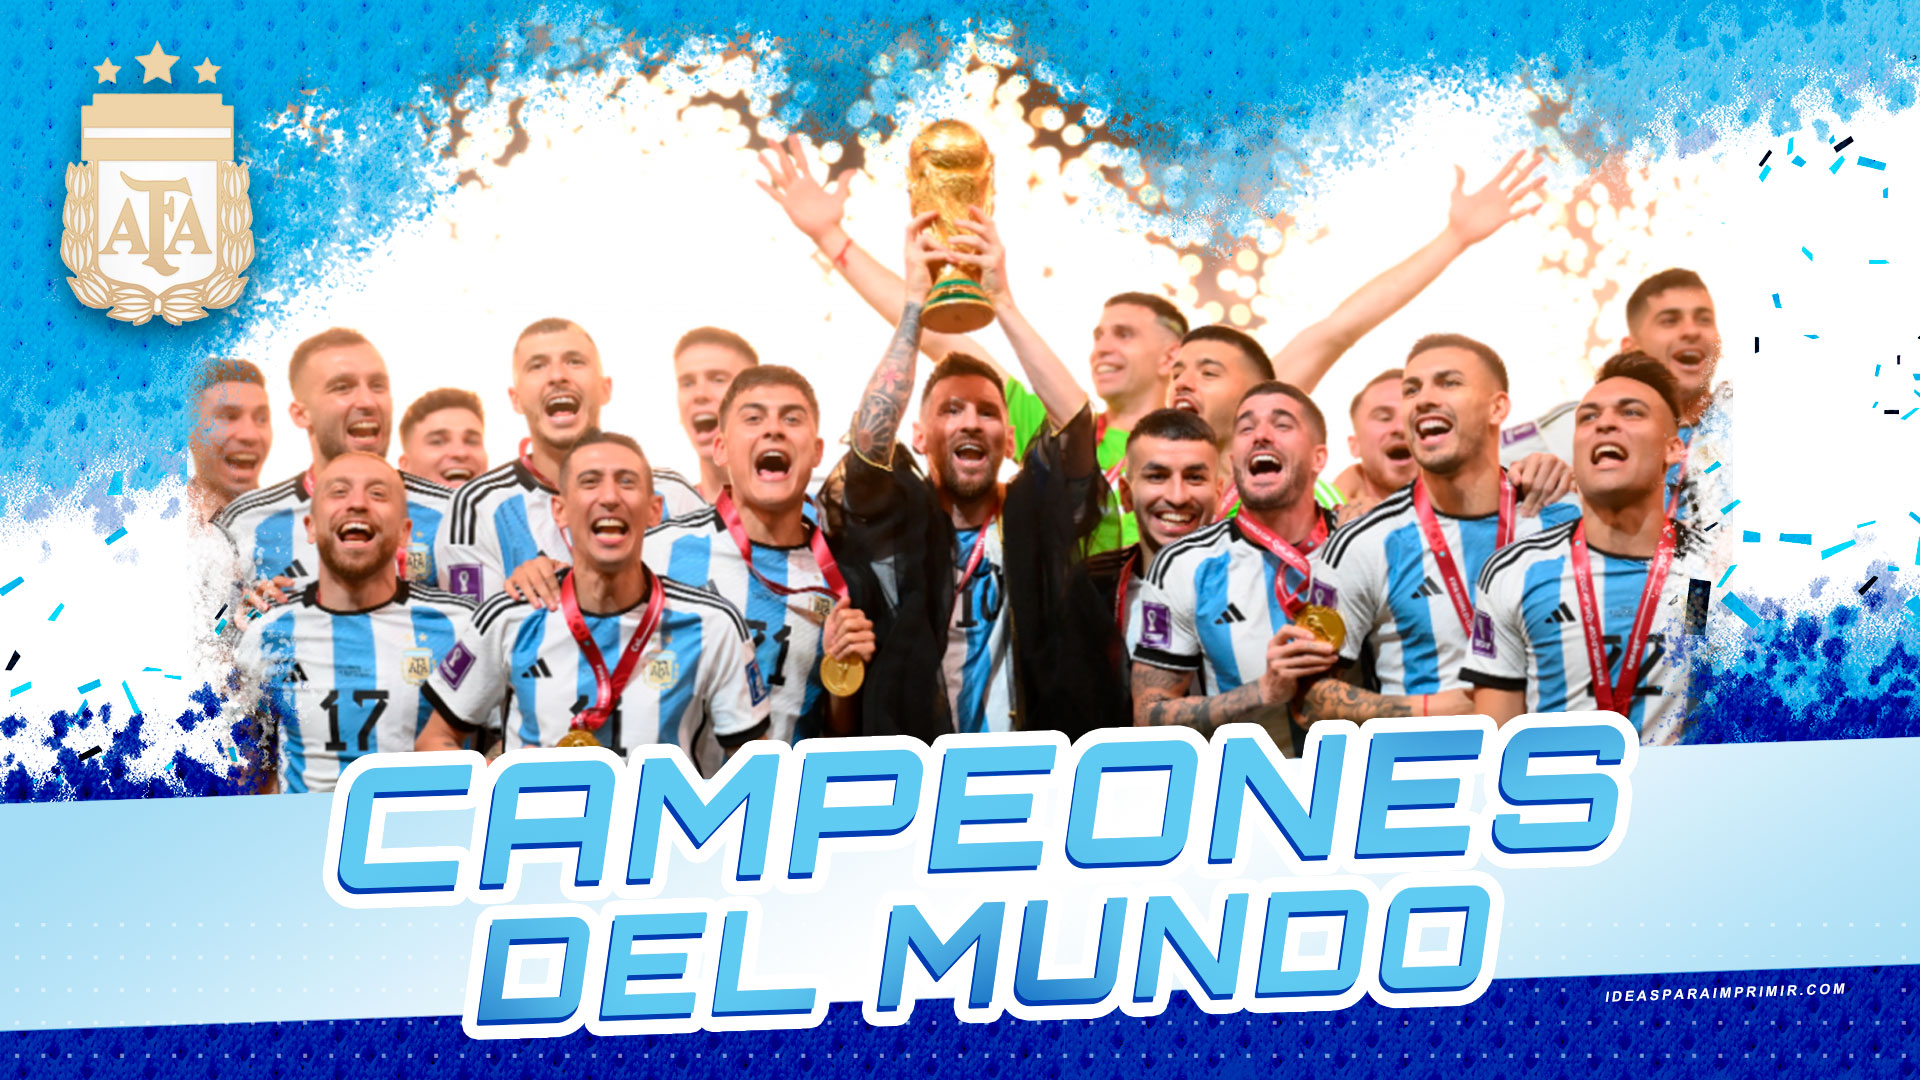 Messi Copa Del Mundo Wallpapers Wallpaper Cave 9891